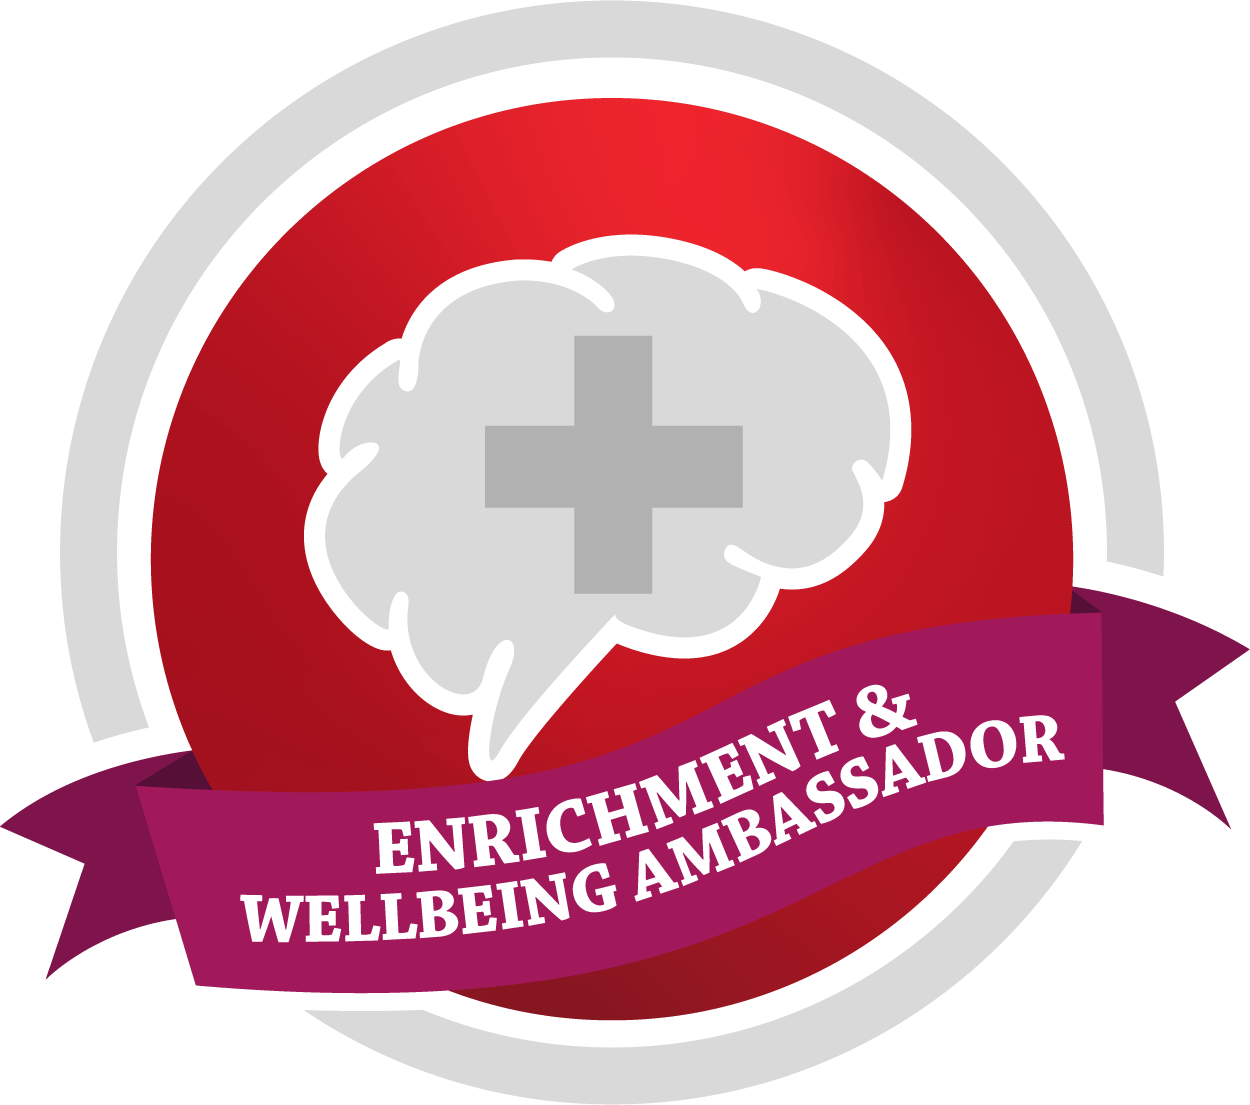 Enrichment & Wellbeing Ambassador